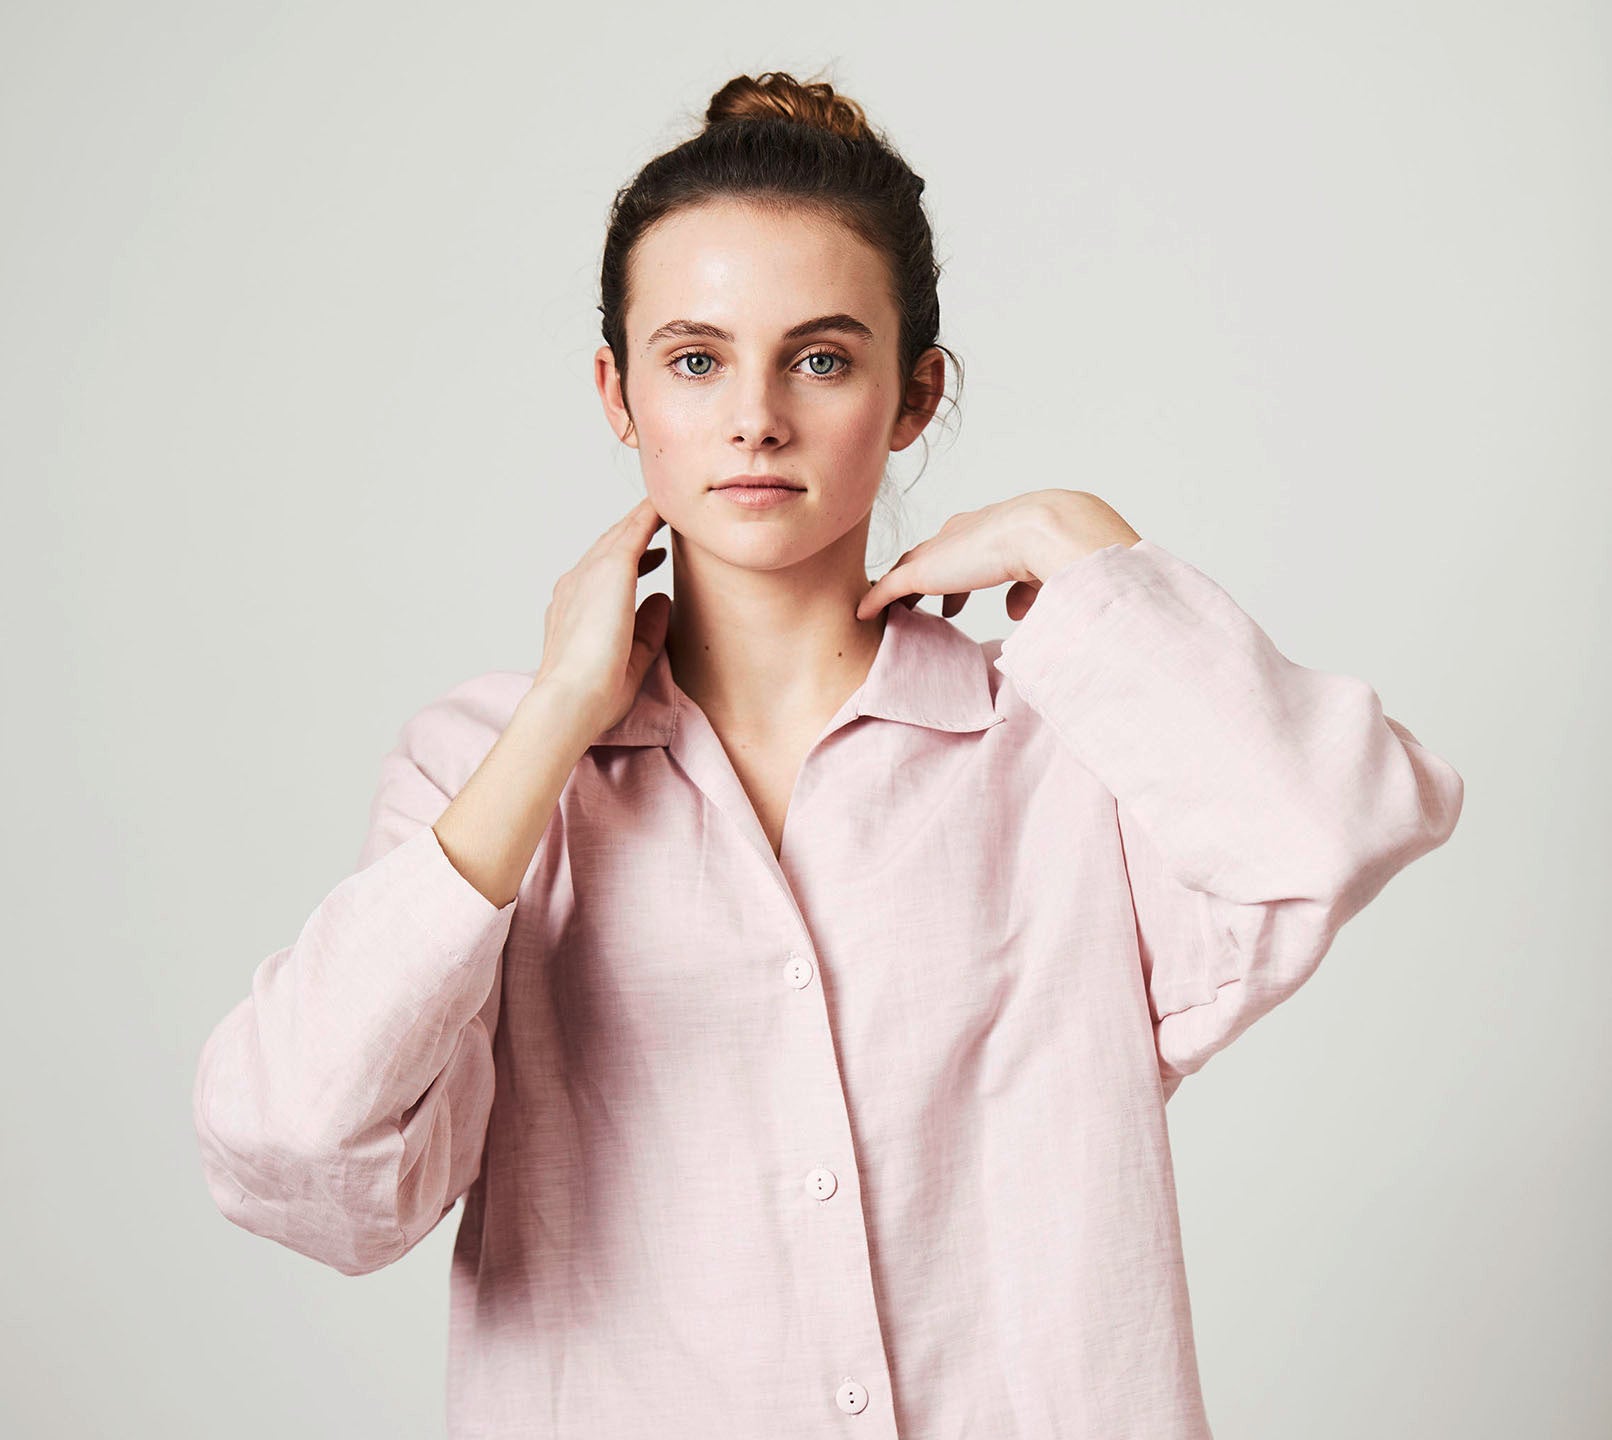 Halbleinen Homewear PJ Shirt in Rose Model Bildausschnitt 1